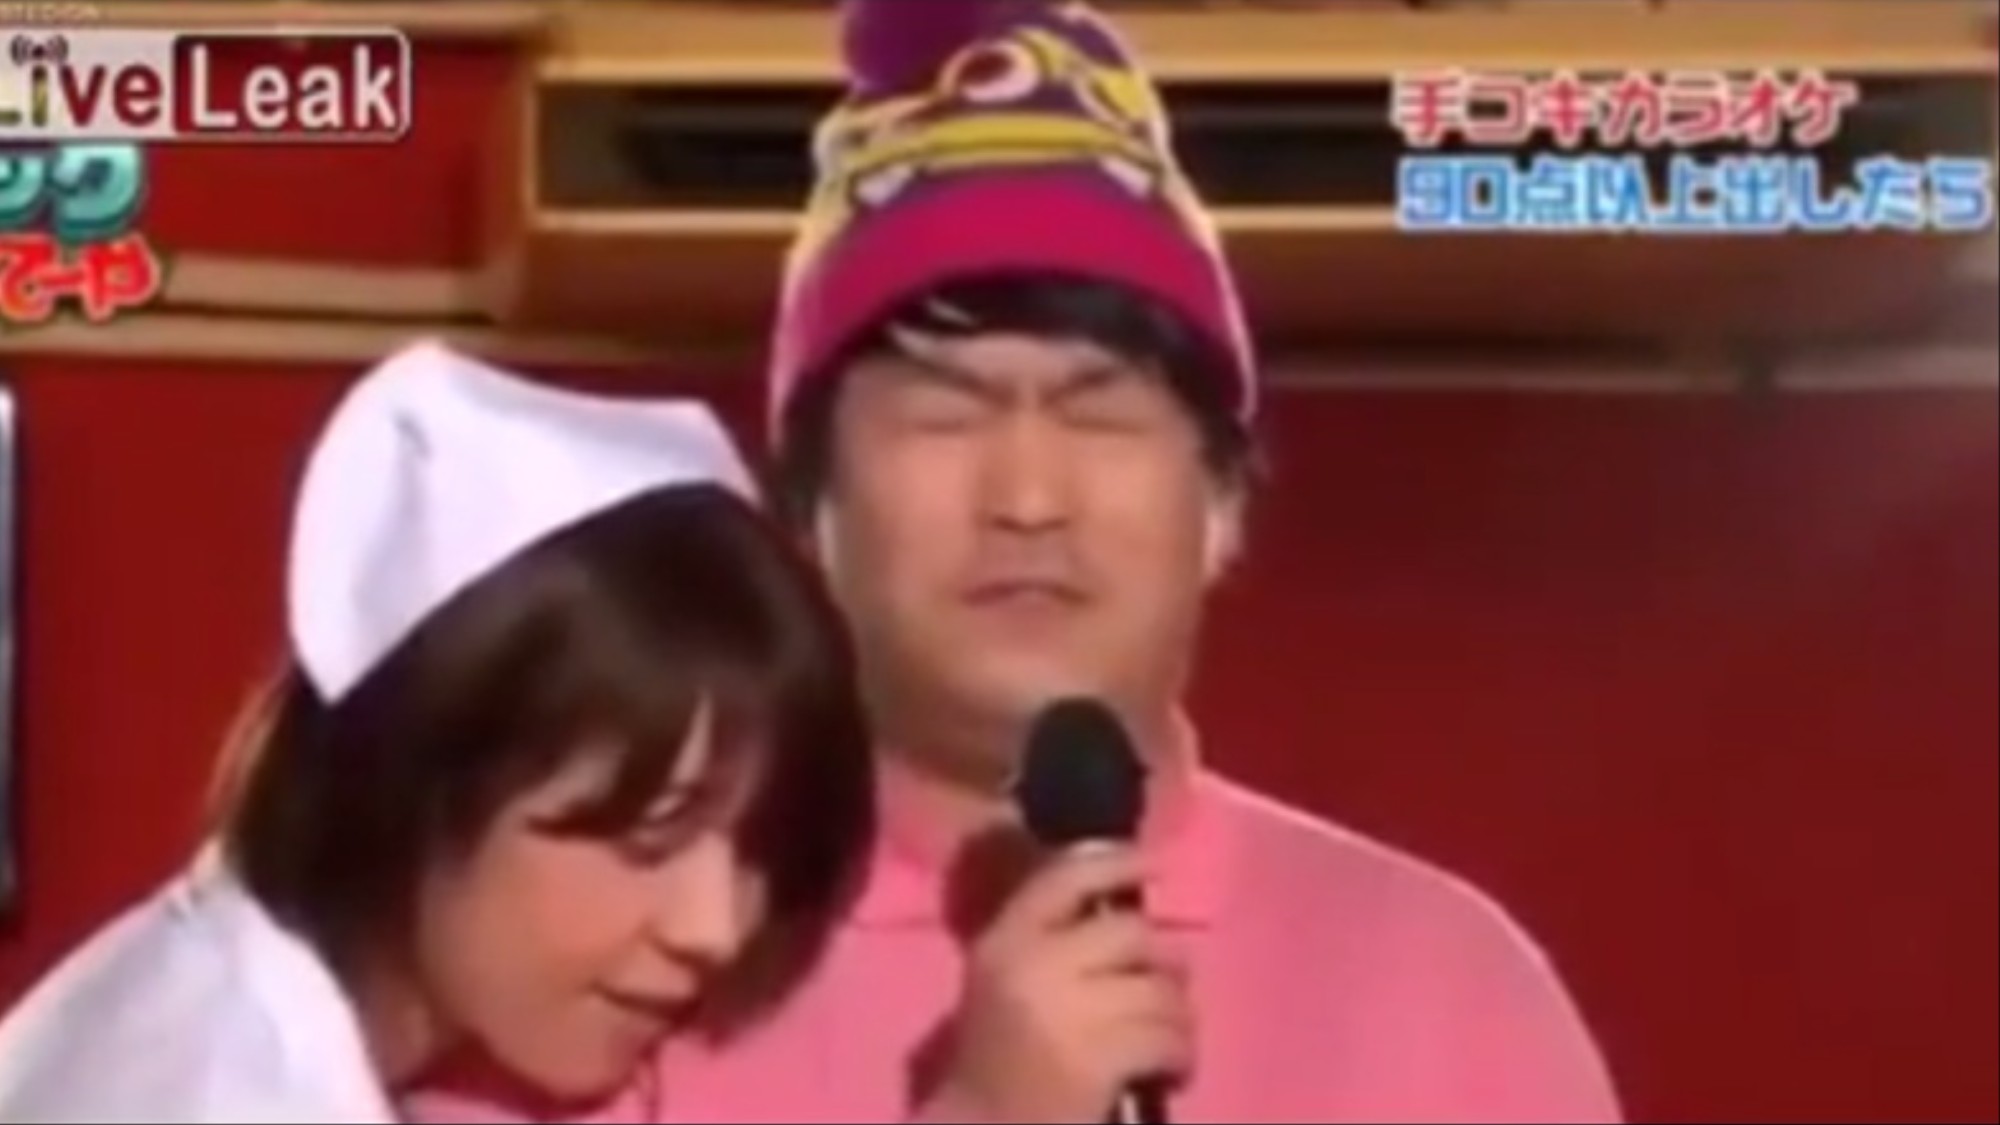 Handjob Tv Japan - Surely This TV Show Where Men Sing Karaoke While Getting ...